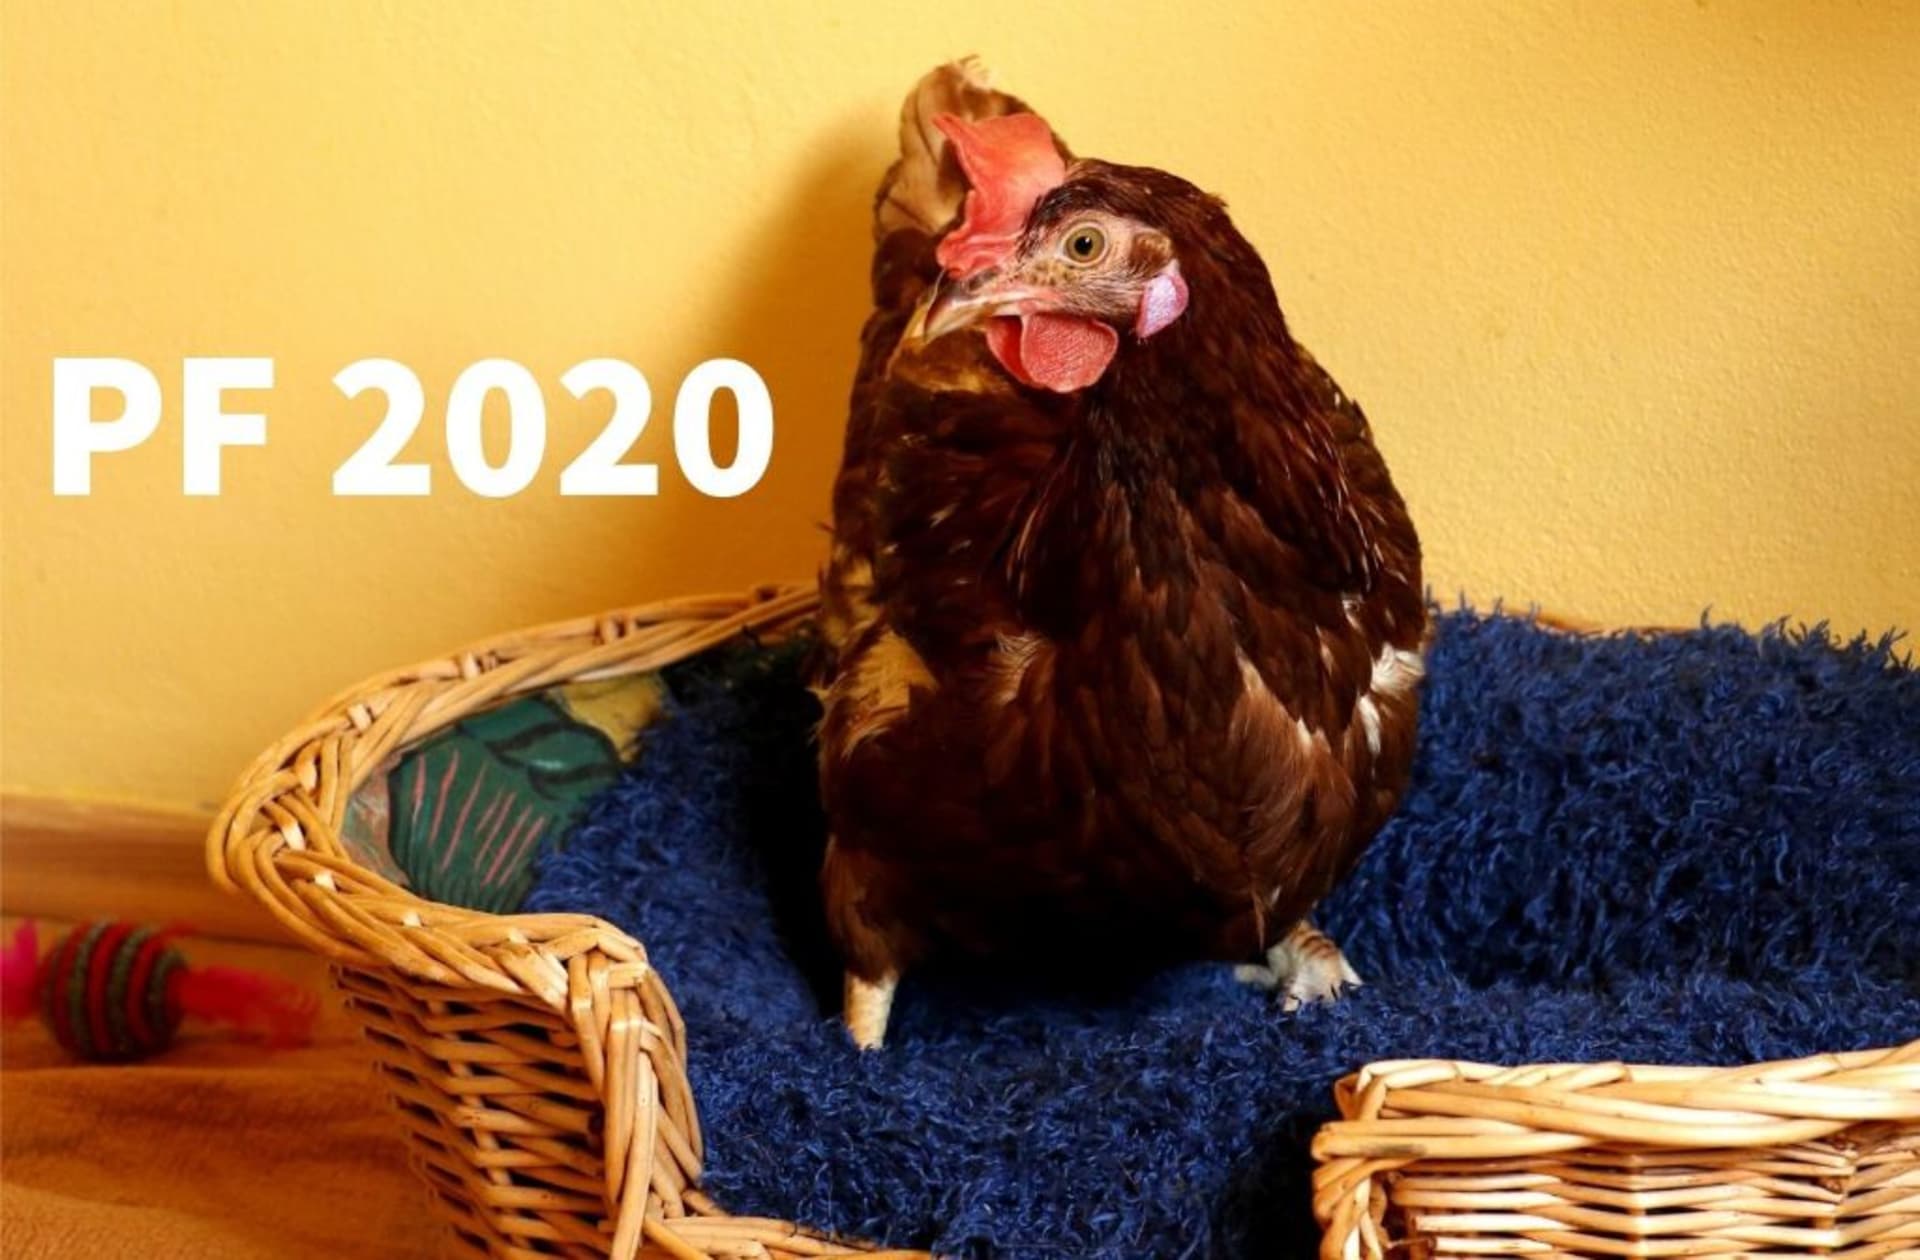 PF 2020 – Ten novej rok nám krásně začíná. Tak ať ho máte celej moc úspěšnej! Držím nám všem pařátky.